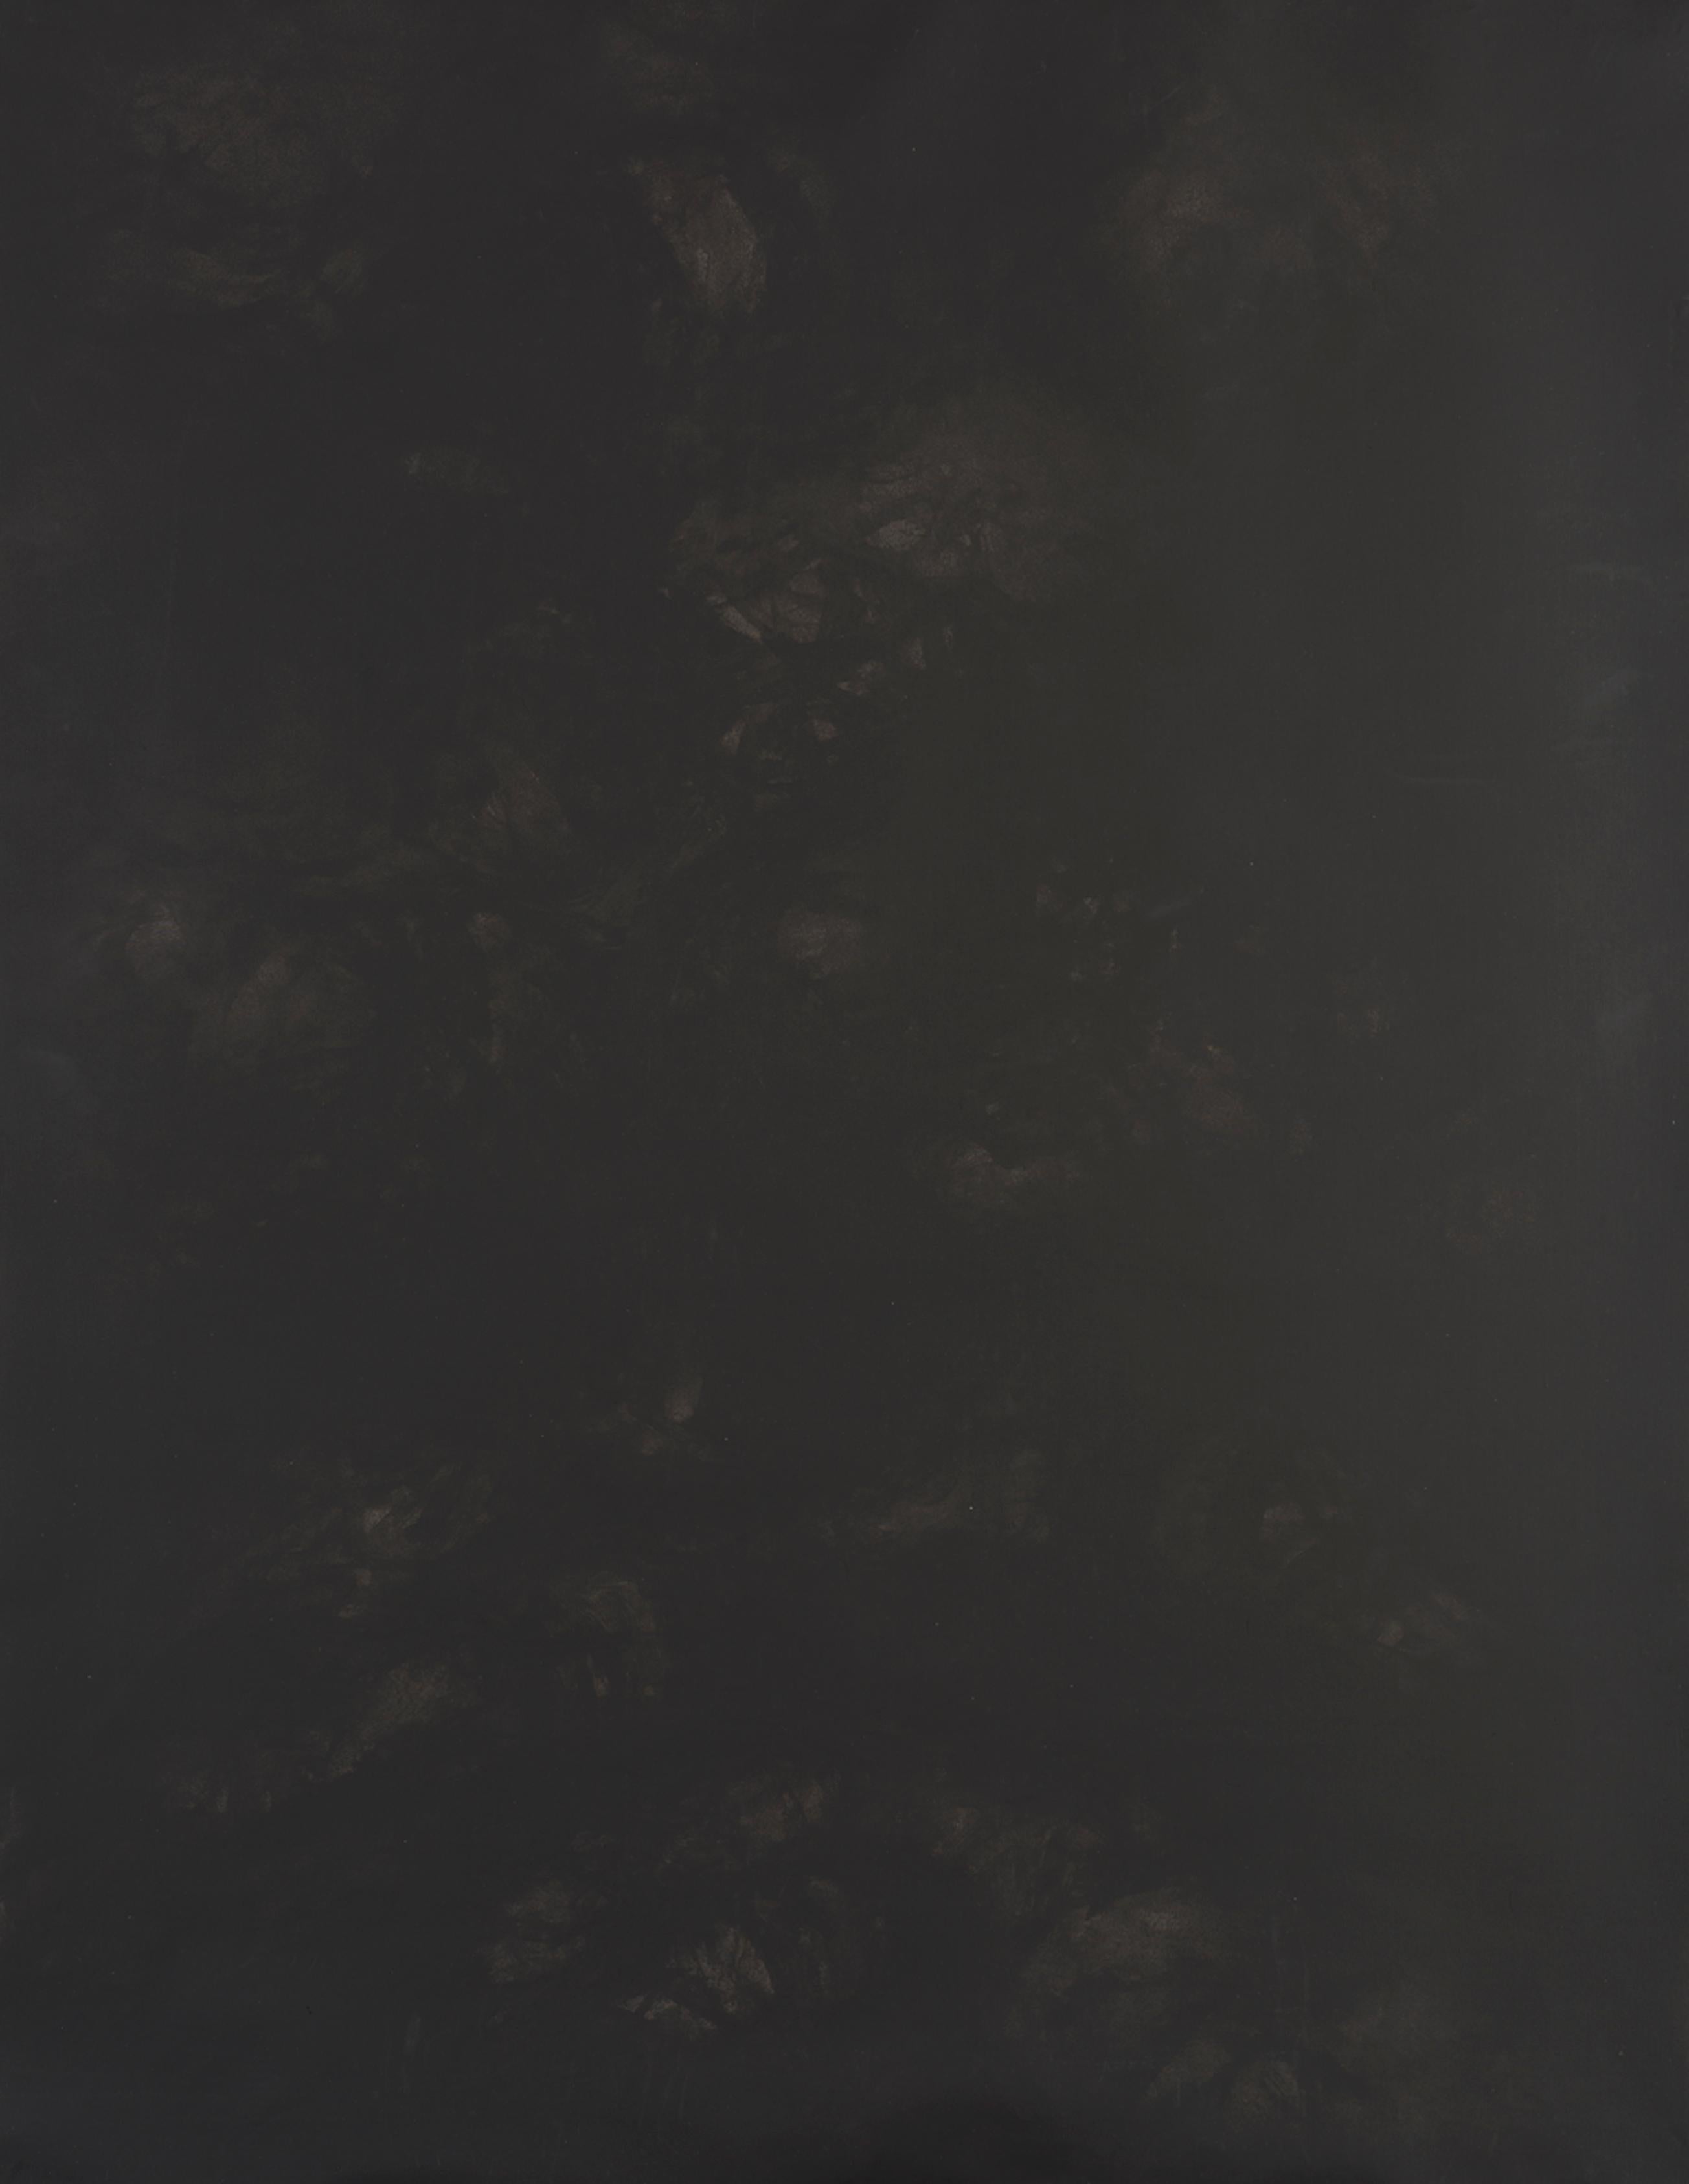 Sans titre 021 [Remains of the Remains 021] - Art abstrait noir, monochrome - Painting de Zsolt Berszán